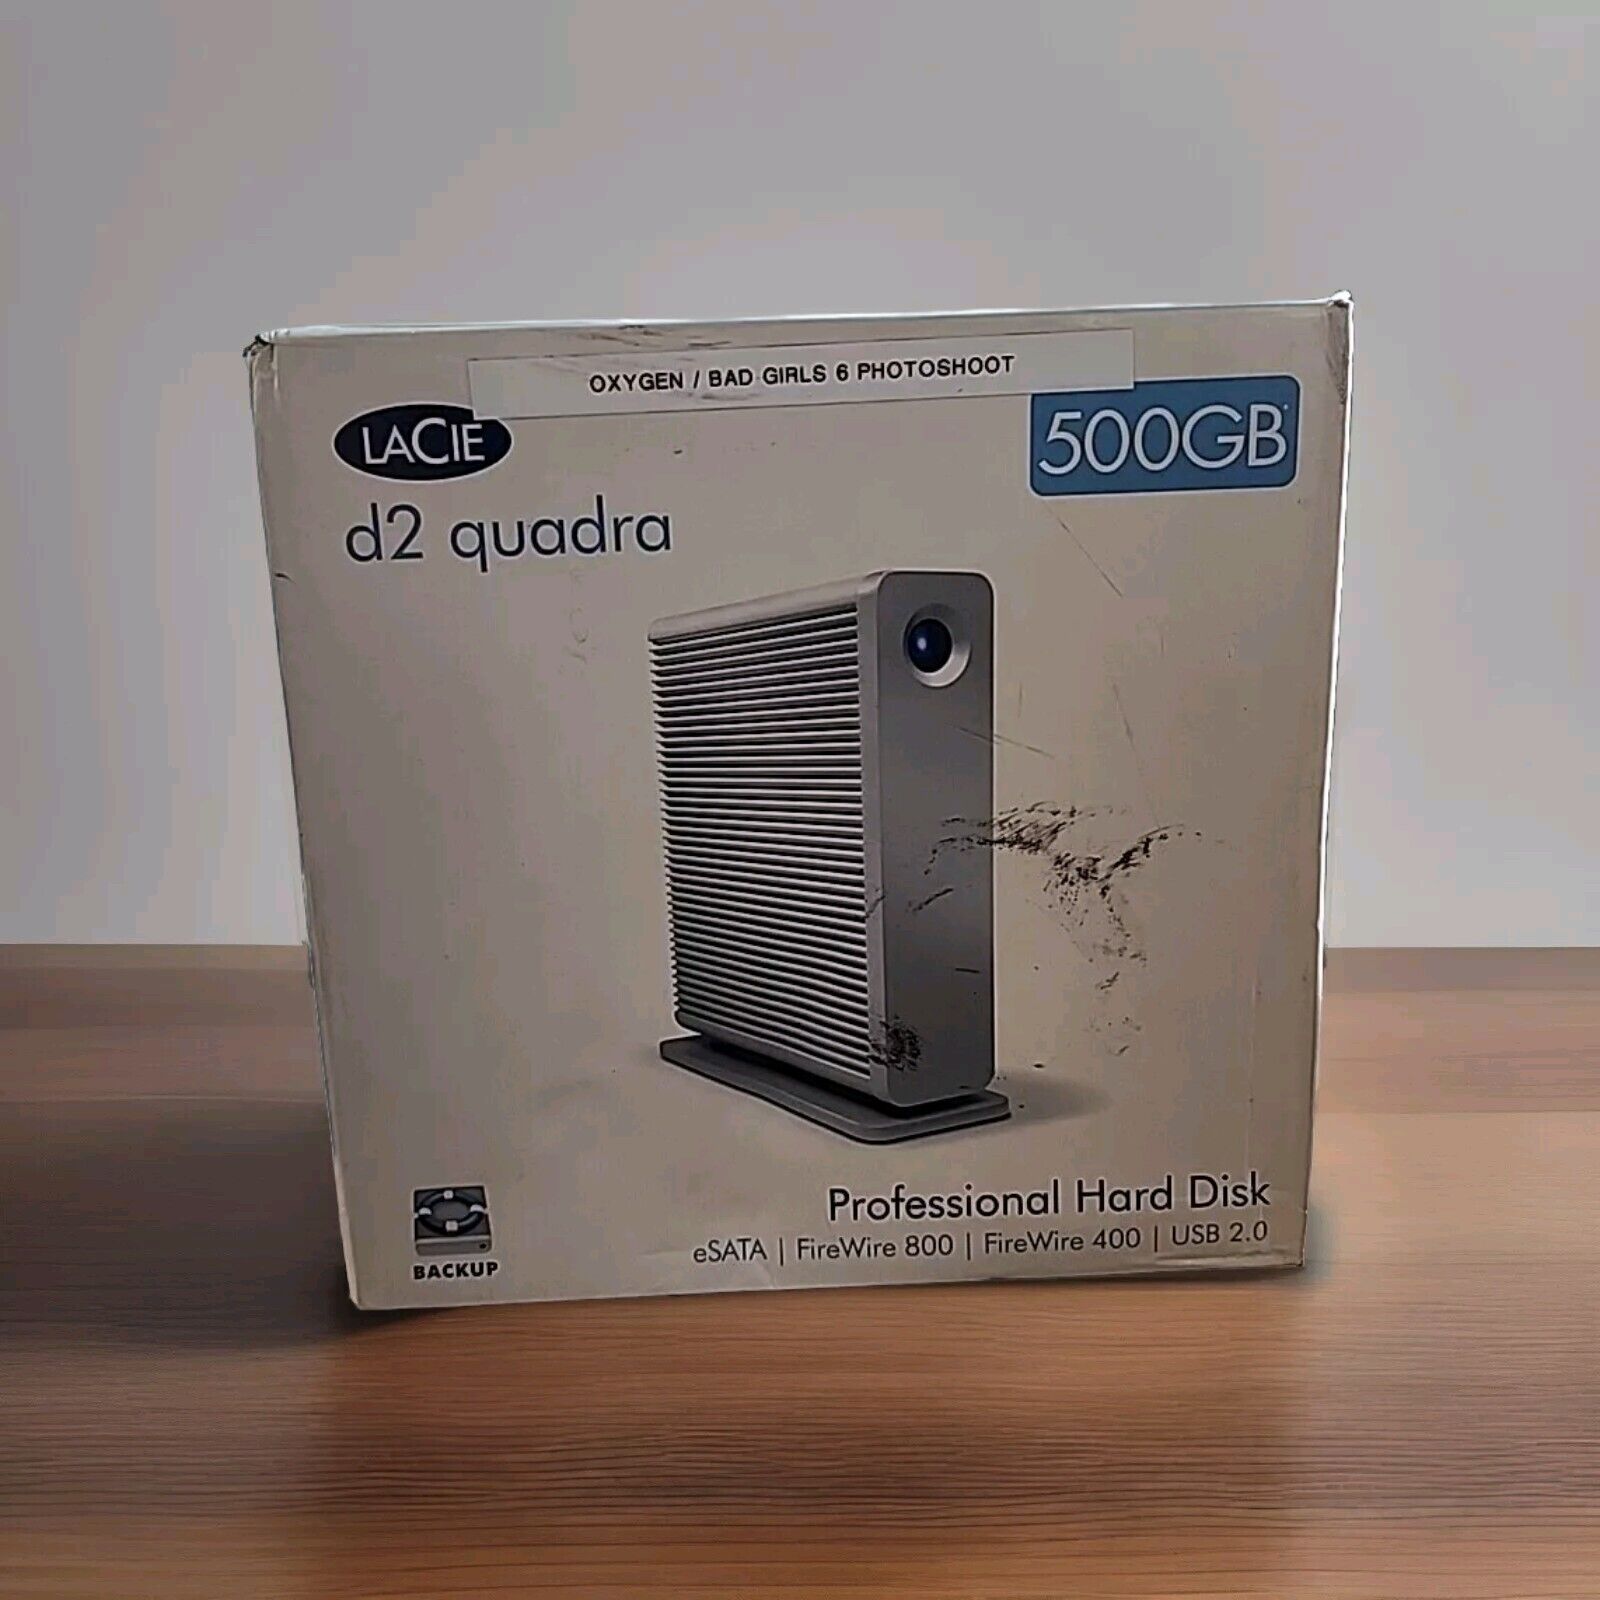 LaCie d2 Quadra 500gb Profesional Hard Disk / Hard Drive